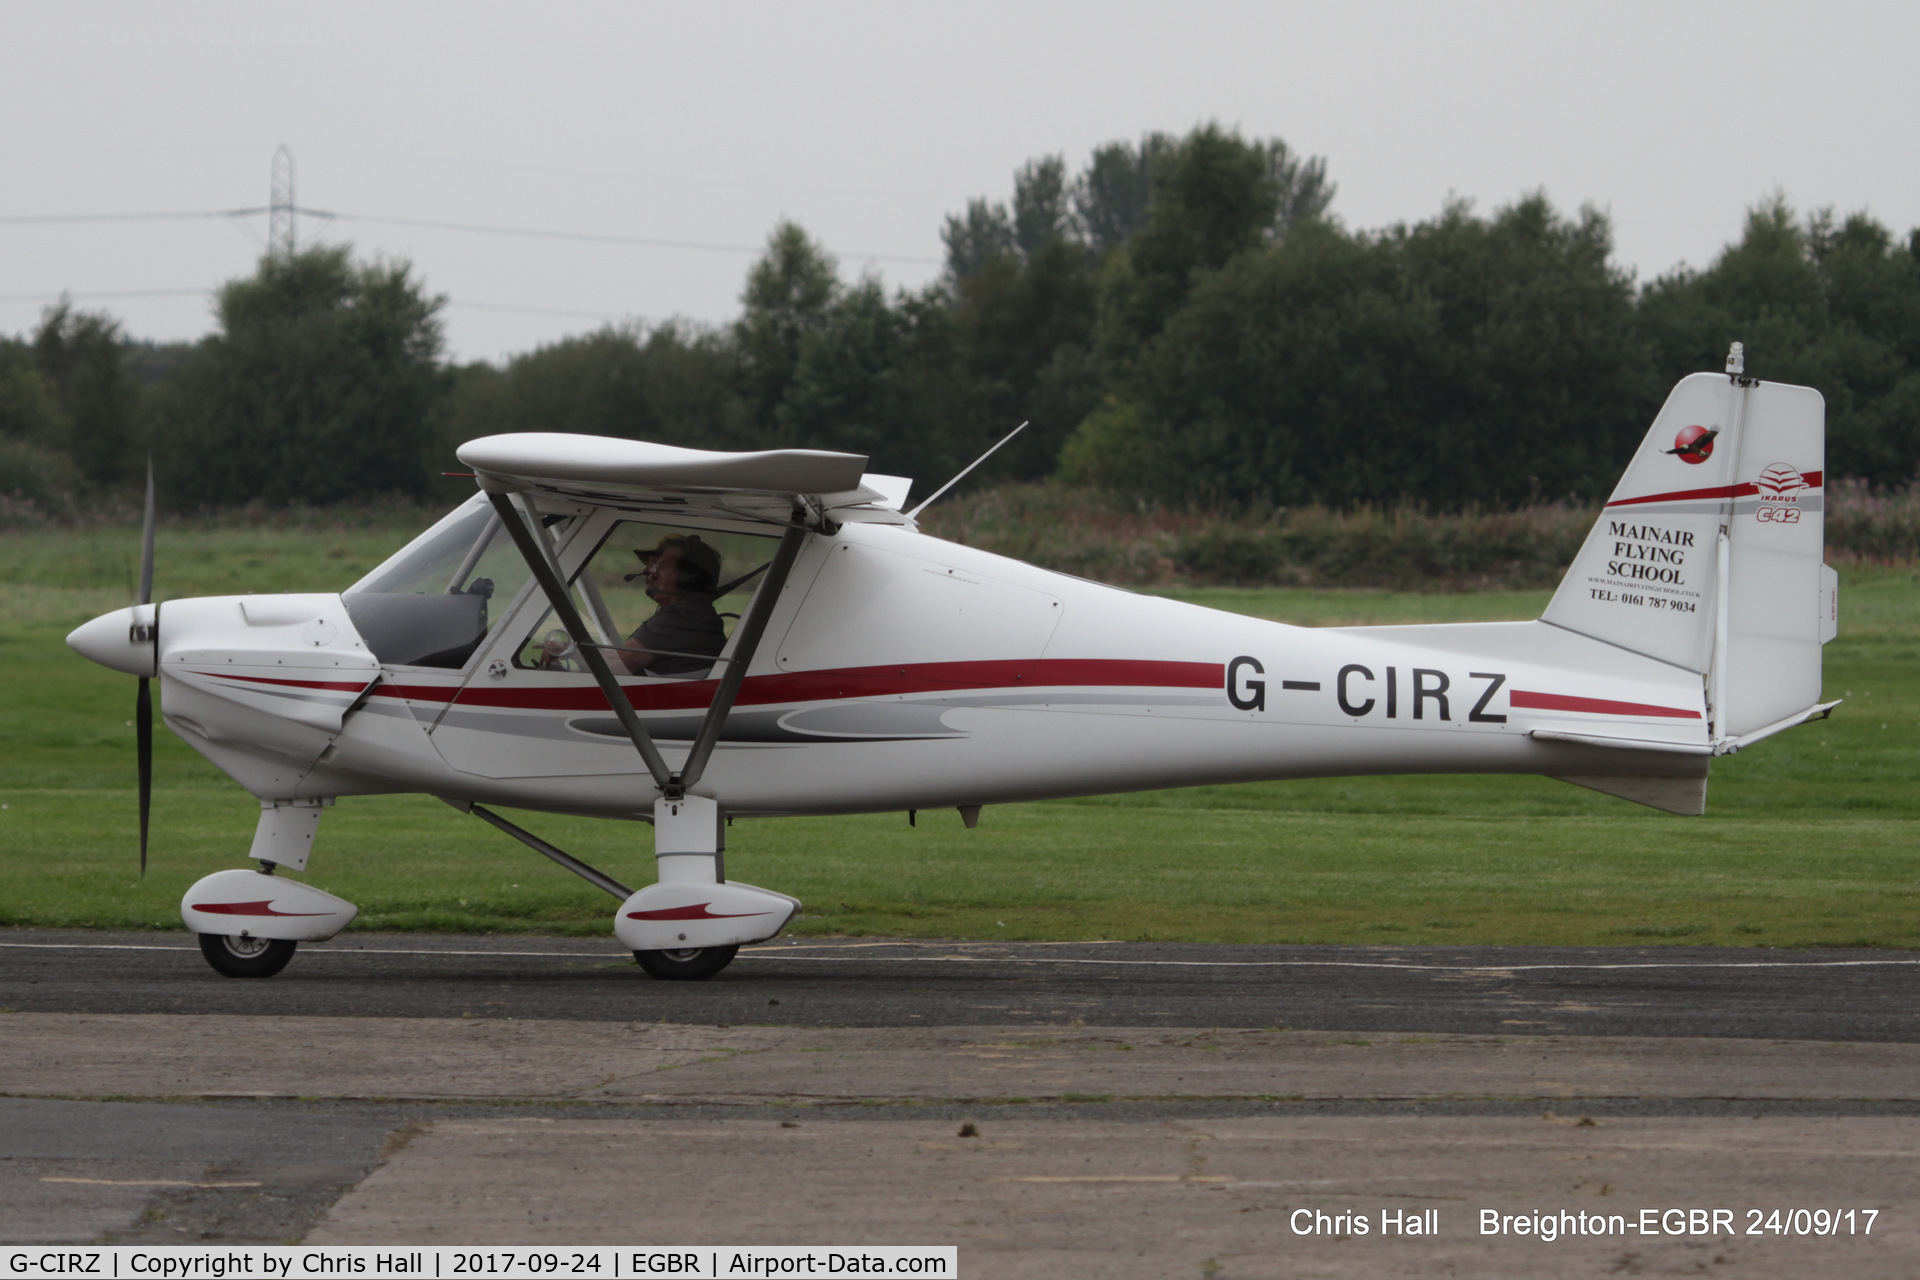 G-CIRZ, 2015 Comco Ikarus C42 FB80 C/N 1506-7403, at Breighton